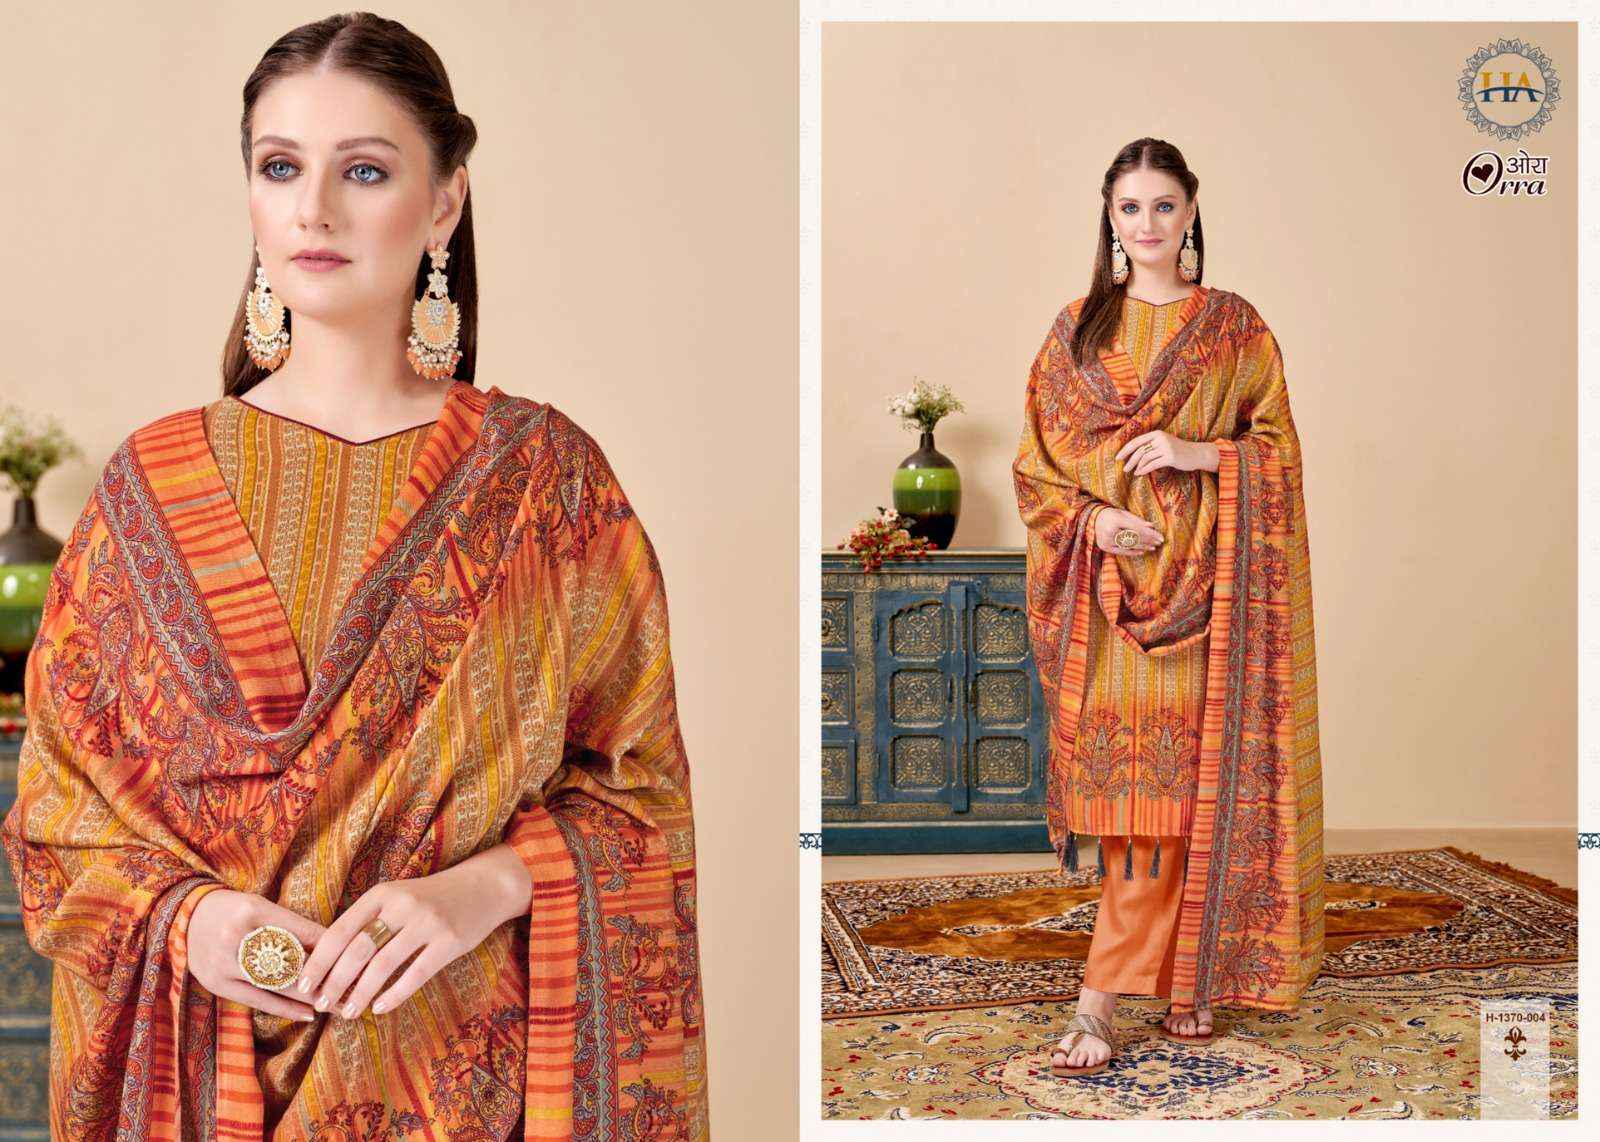 Harshit Fashion Hub Orra Pashmina Dress Material - Wholesale Factory